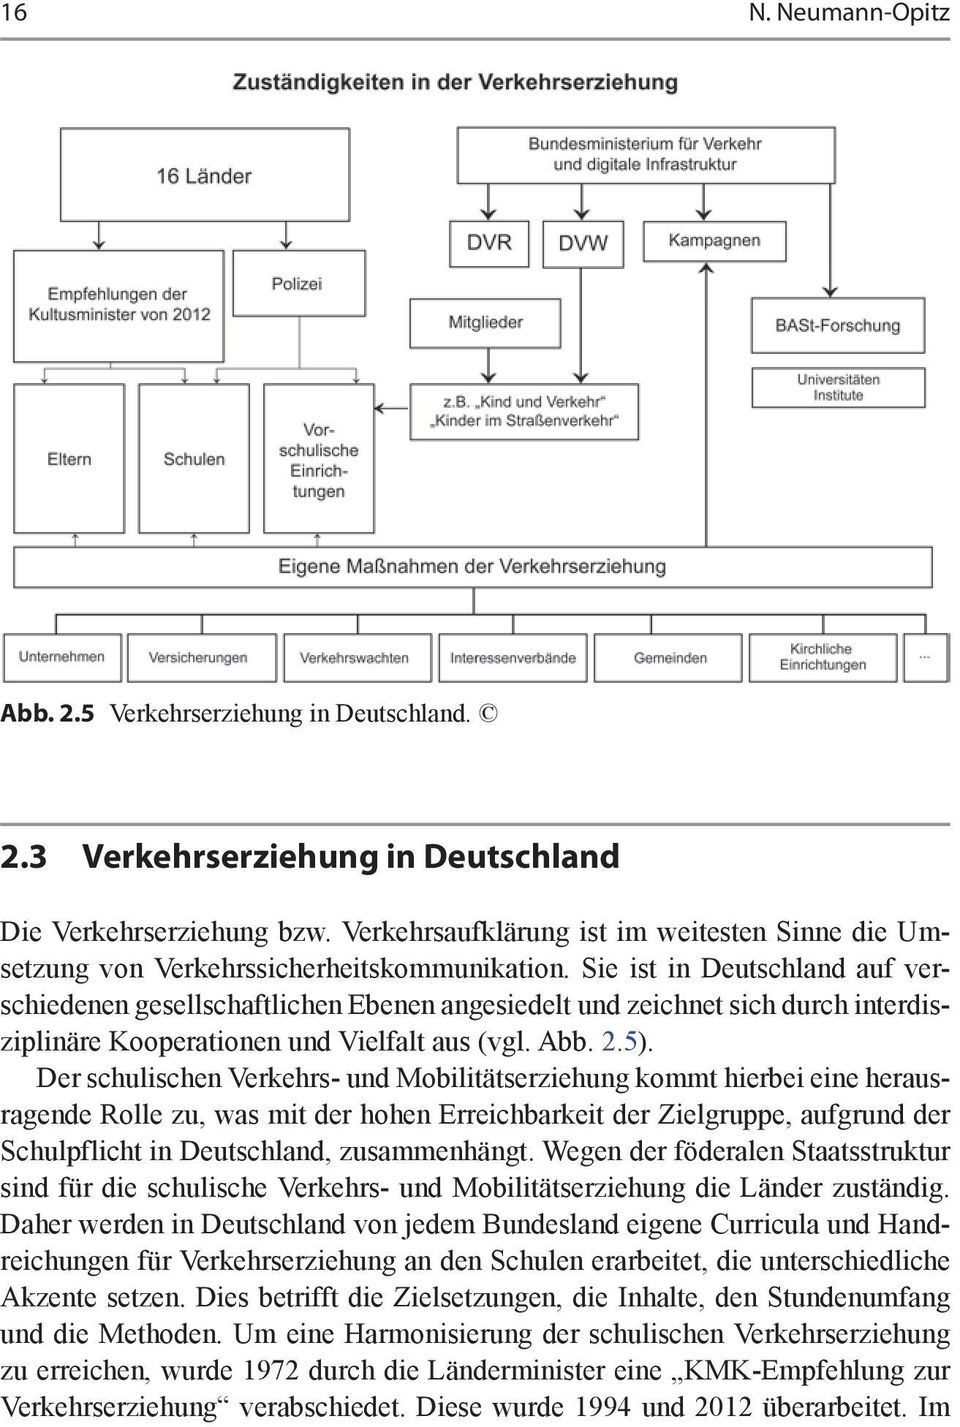 Sie ist in Deutschland auf verschiedenen gesellschaftlichen Ebenen angesiedelt und zeichnet sich durch interdisziplinäre Kooperationen und Vielfalt aus (vgl. Abb. 2.5).